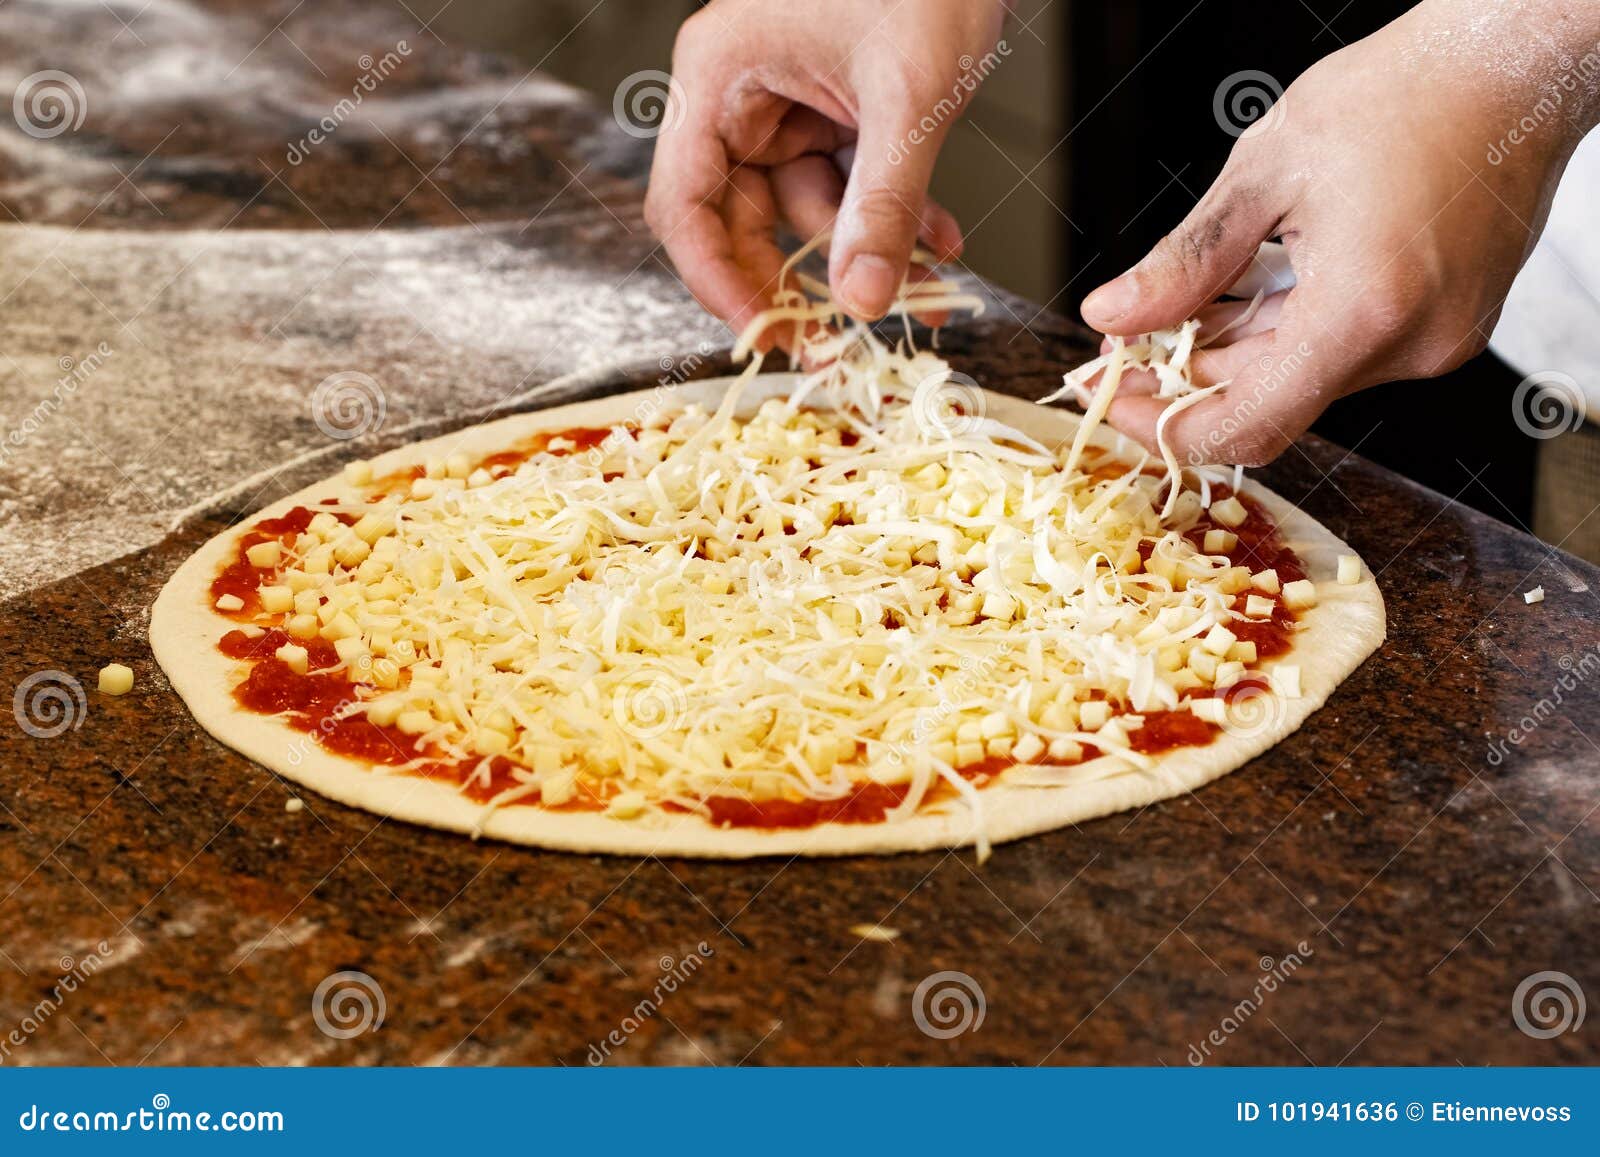 когда класть в пиццу сыр духовке (120) фото